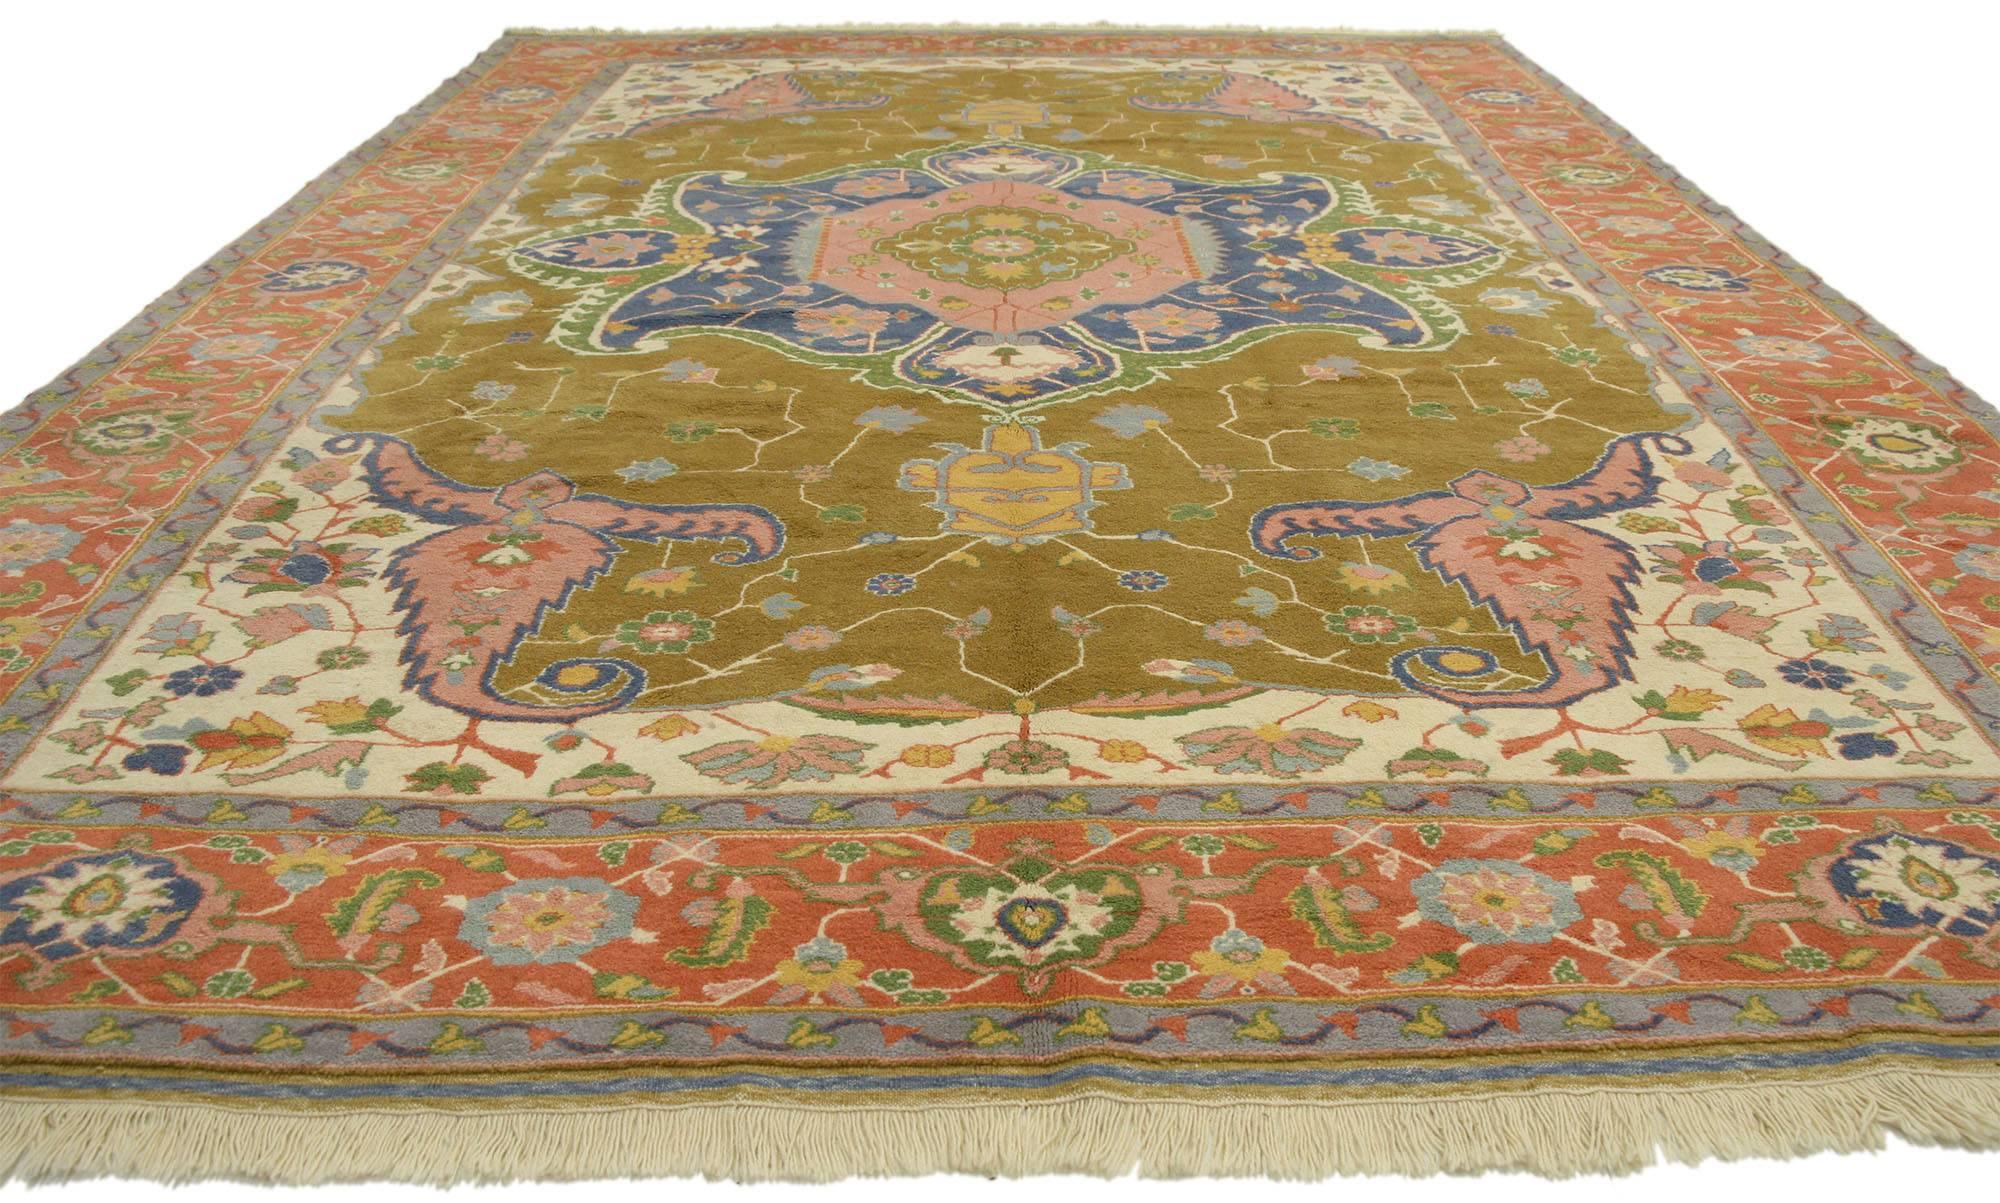 77115 tapis vintage turc Oushak d'Anatolie avec un style rétro bohème méditerranéen. Ce tapis turc d'origine anatolienne Oushak, en laine nouée à la main, présente un motif géométrique sur toute sa surface, composé d'un médaillon cuspidé à grande